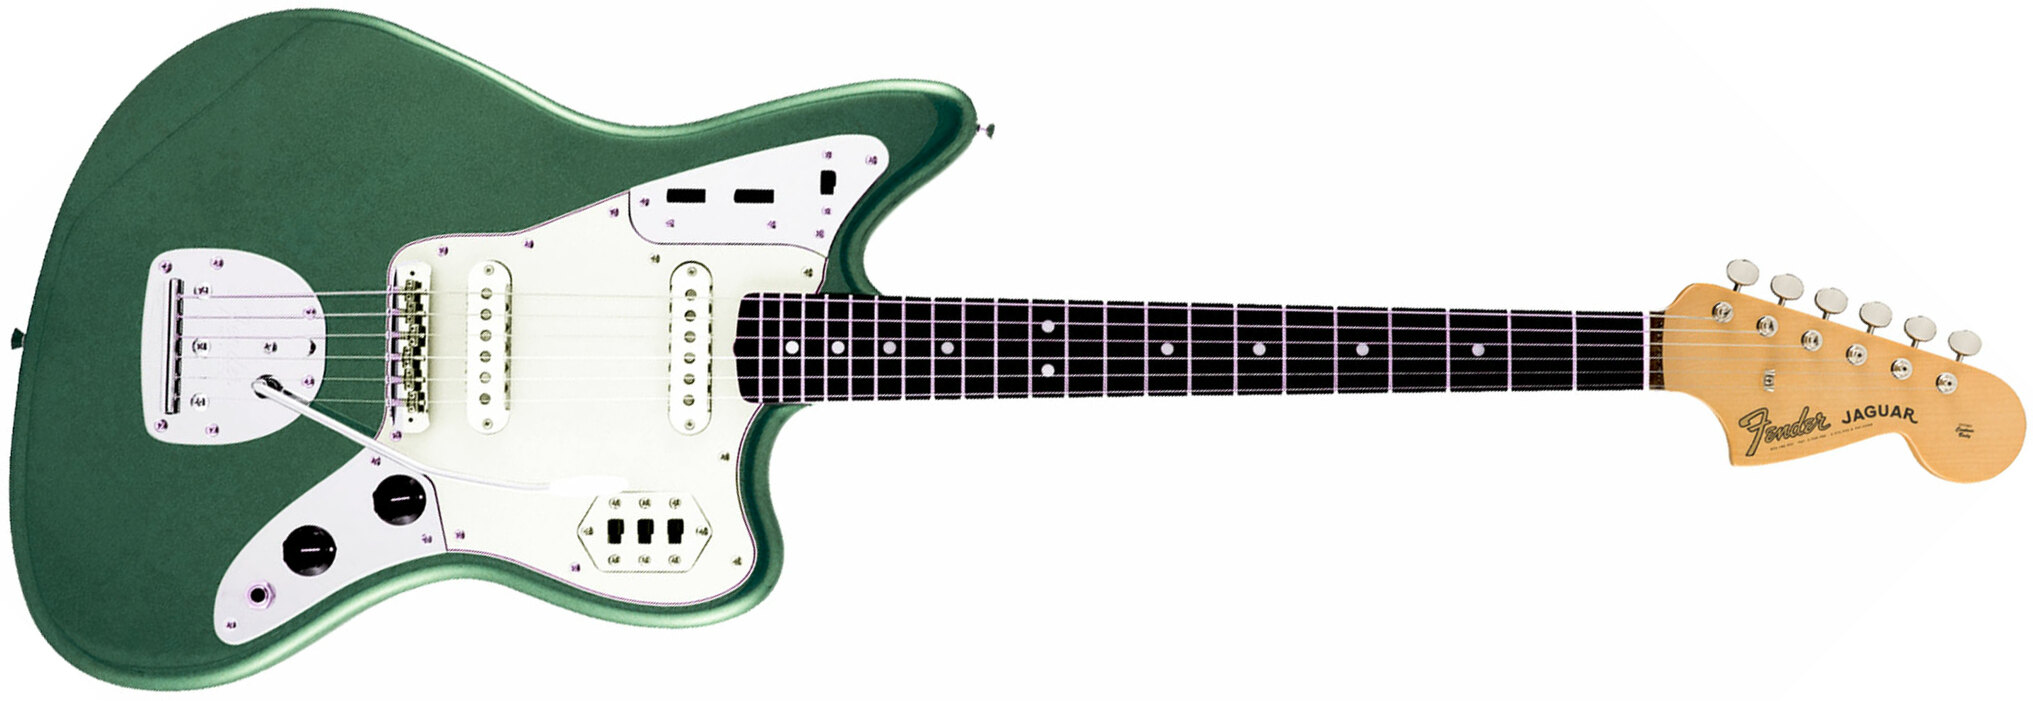 Fender Jaguar Traditional Ii 60s Jap 2s Trem Rw - Sherwood Green Metallic - Retro-rock elektrische gitaar - Main picture